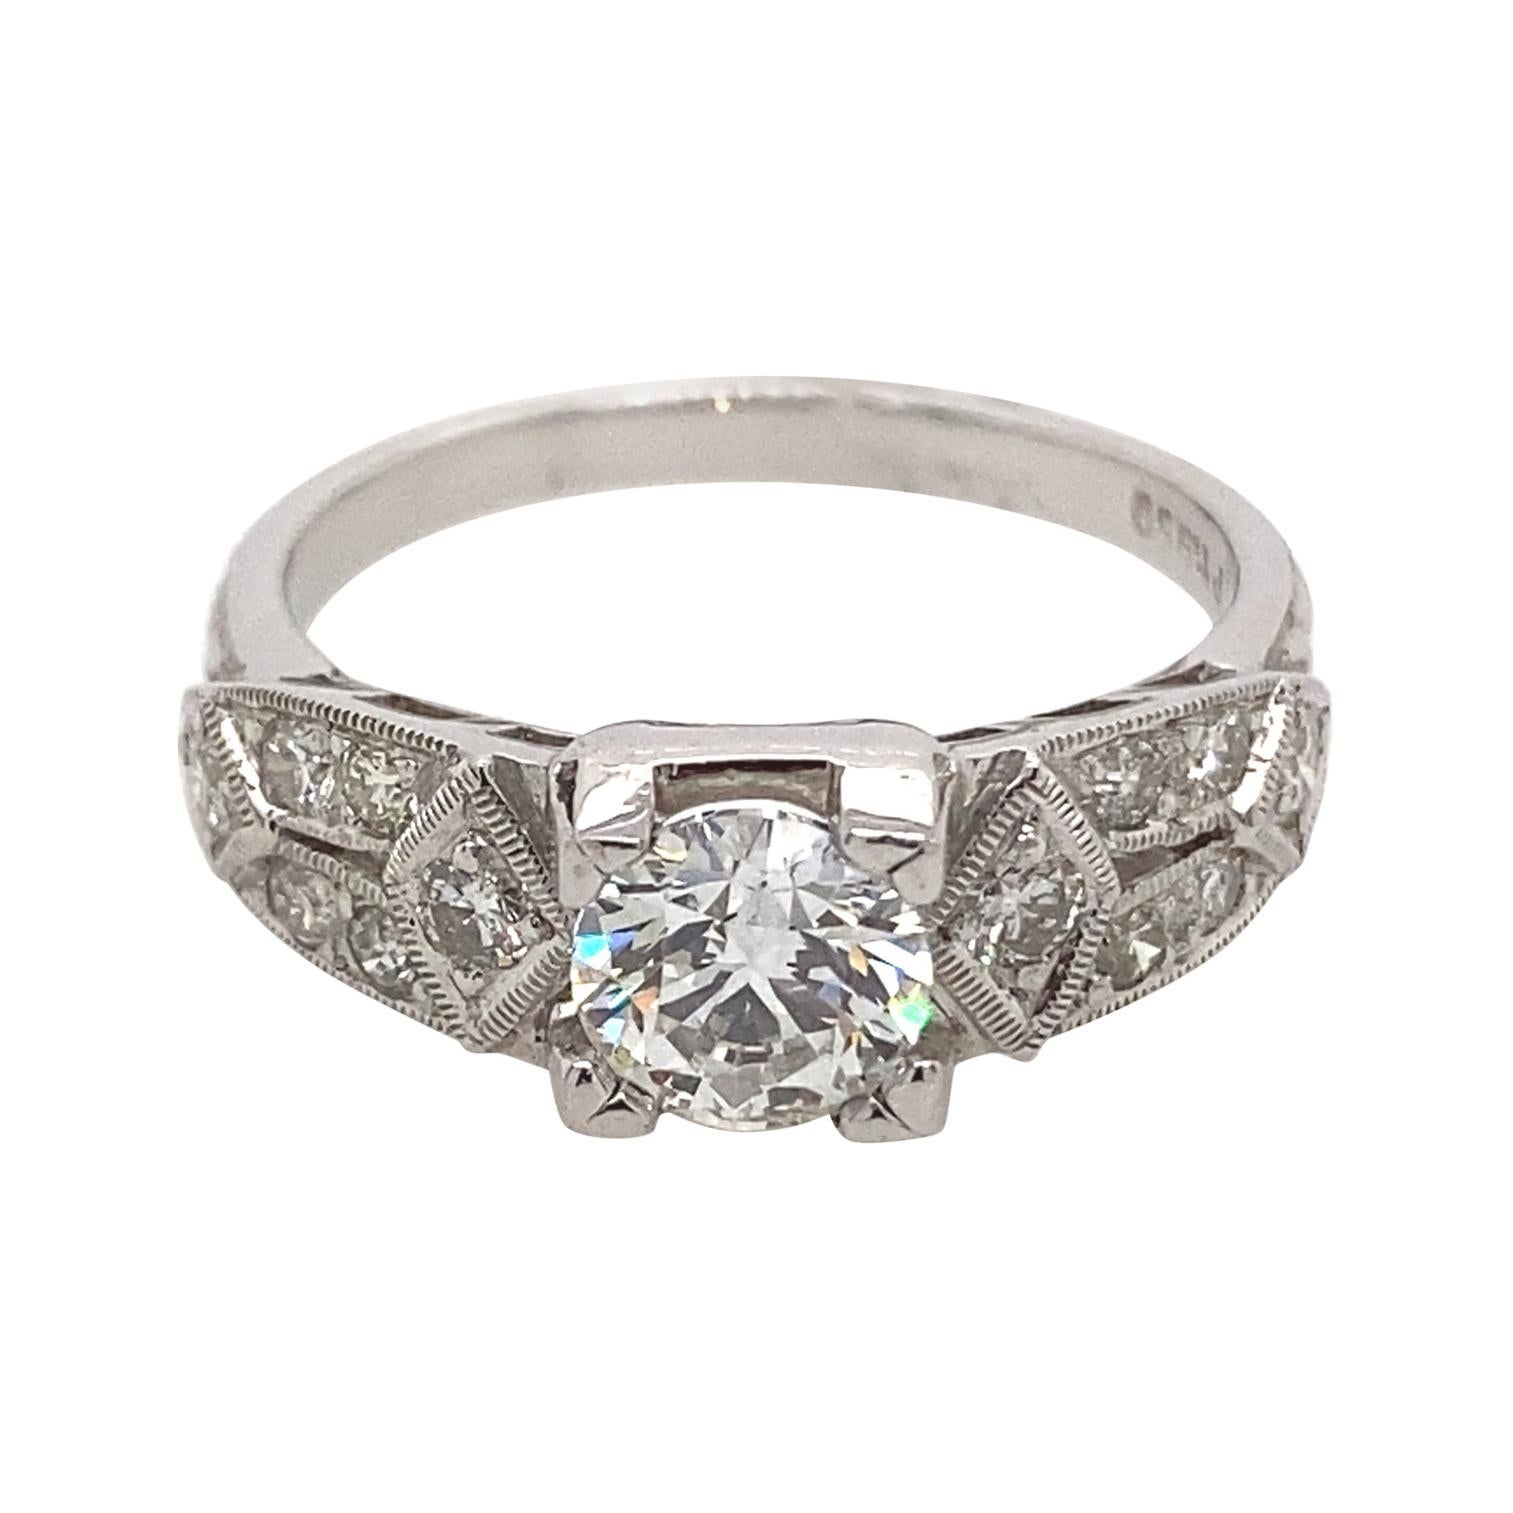 1.30 Carat Edwardian Inspired Diamond Engagement Ring 18 Karat White Gold